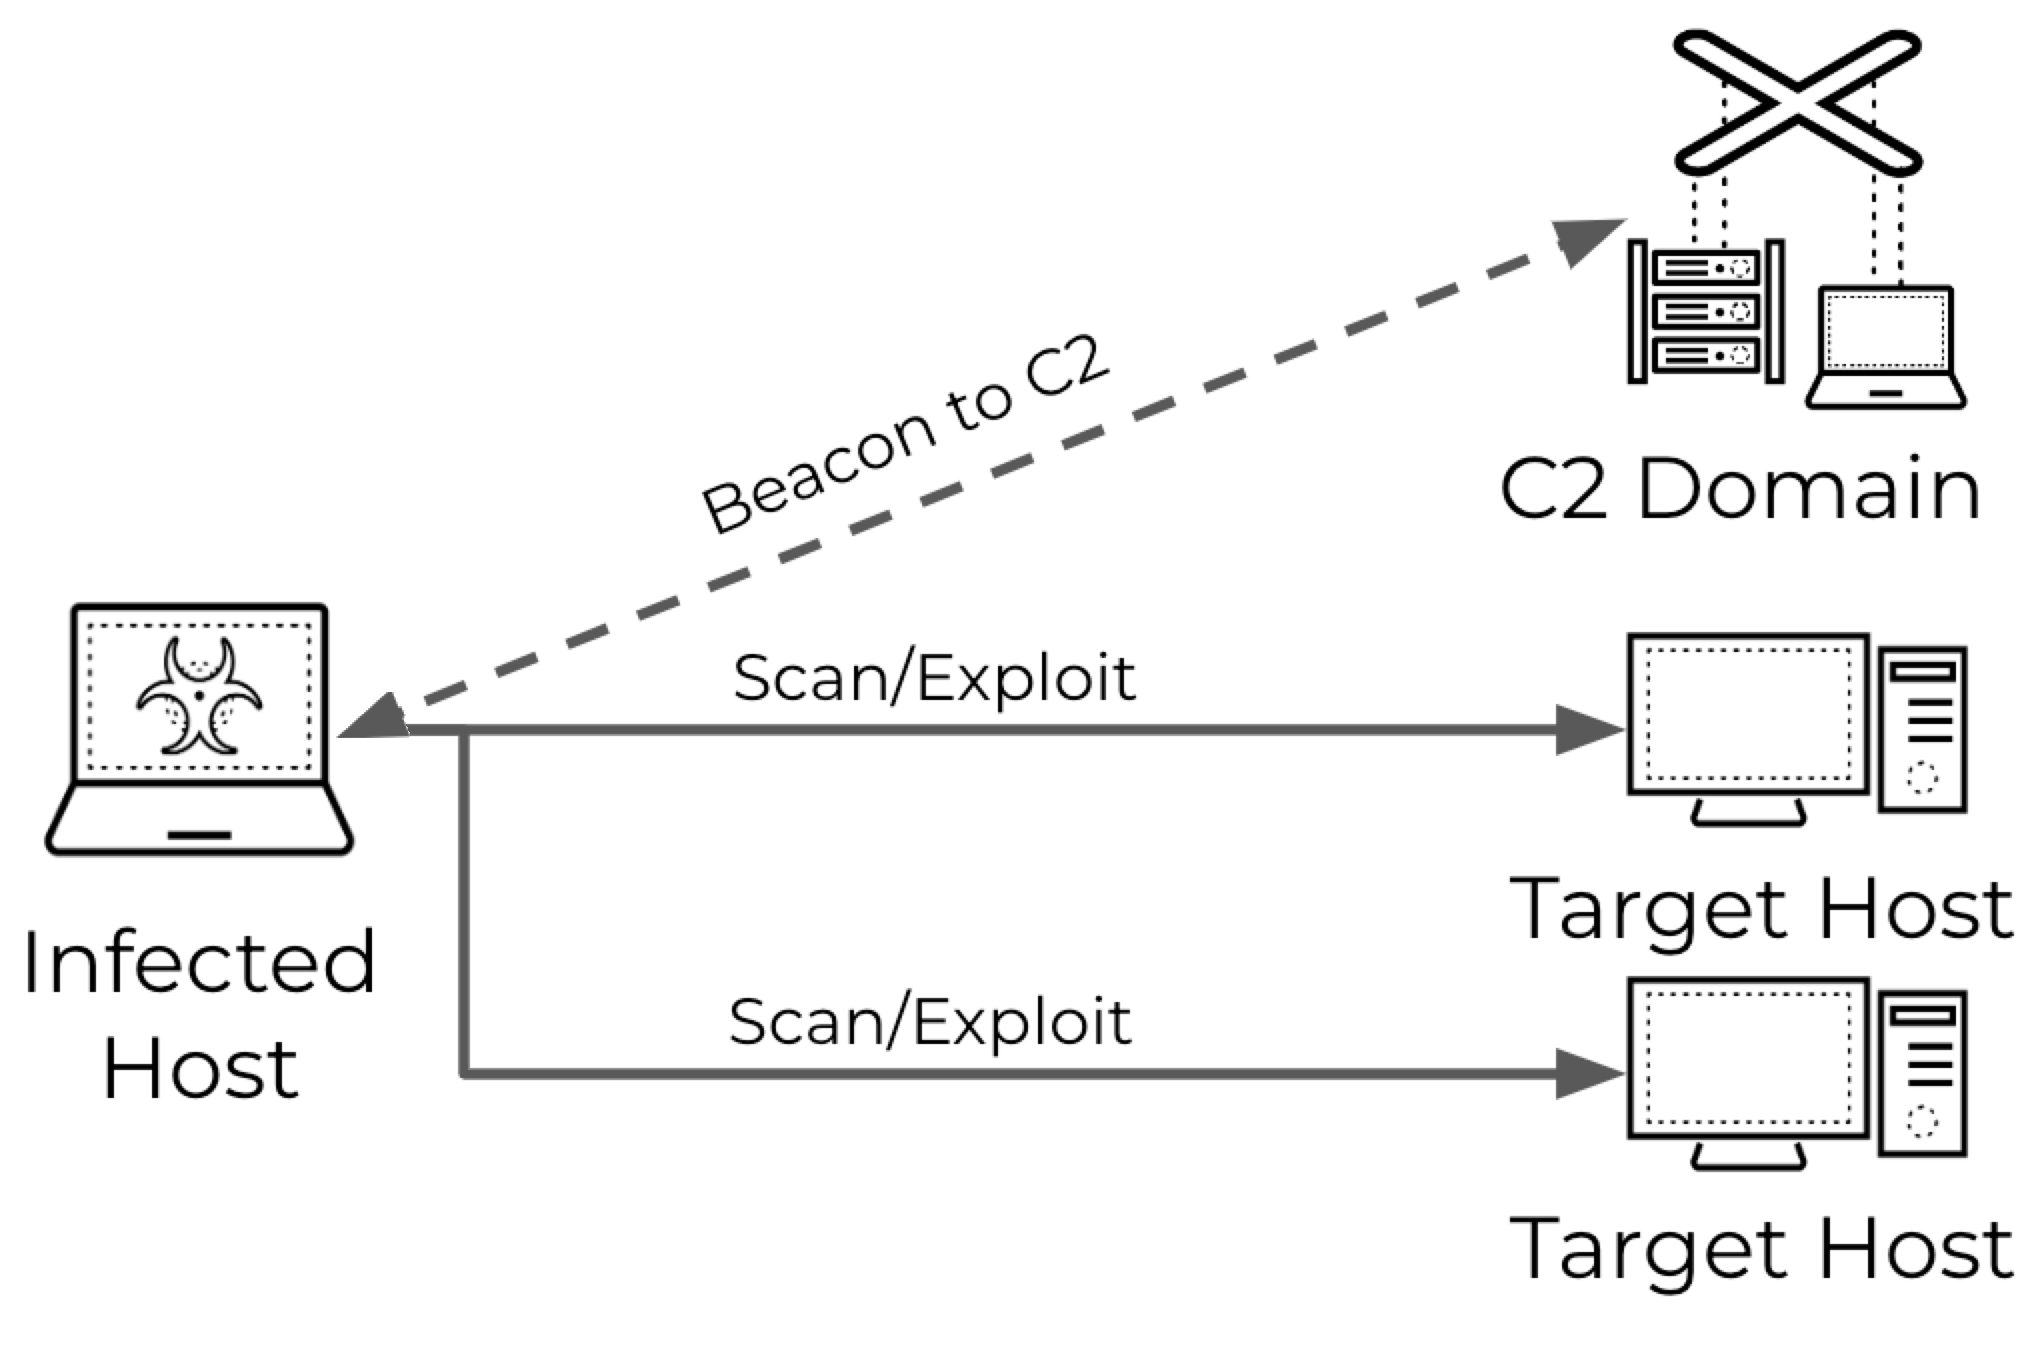 A imagem 2 é um diagrama de verificação orientada por malware. O host infectado verifica e explora dois hosts direcionados. Um farol vai e vem do domínio de comando e controle e do host infectado.